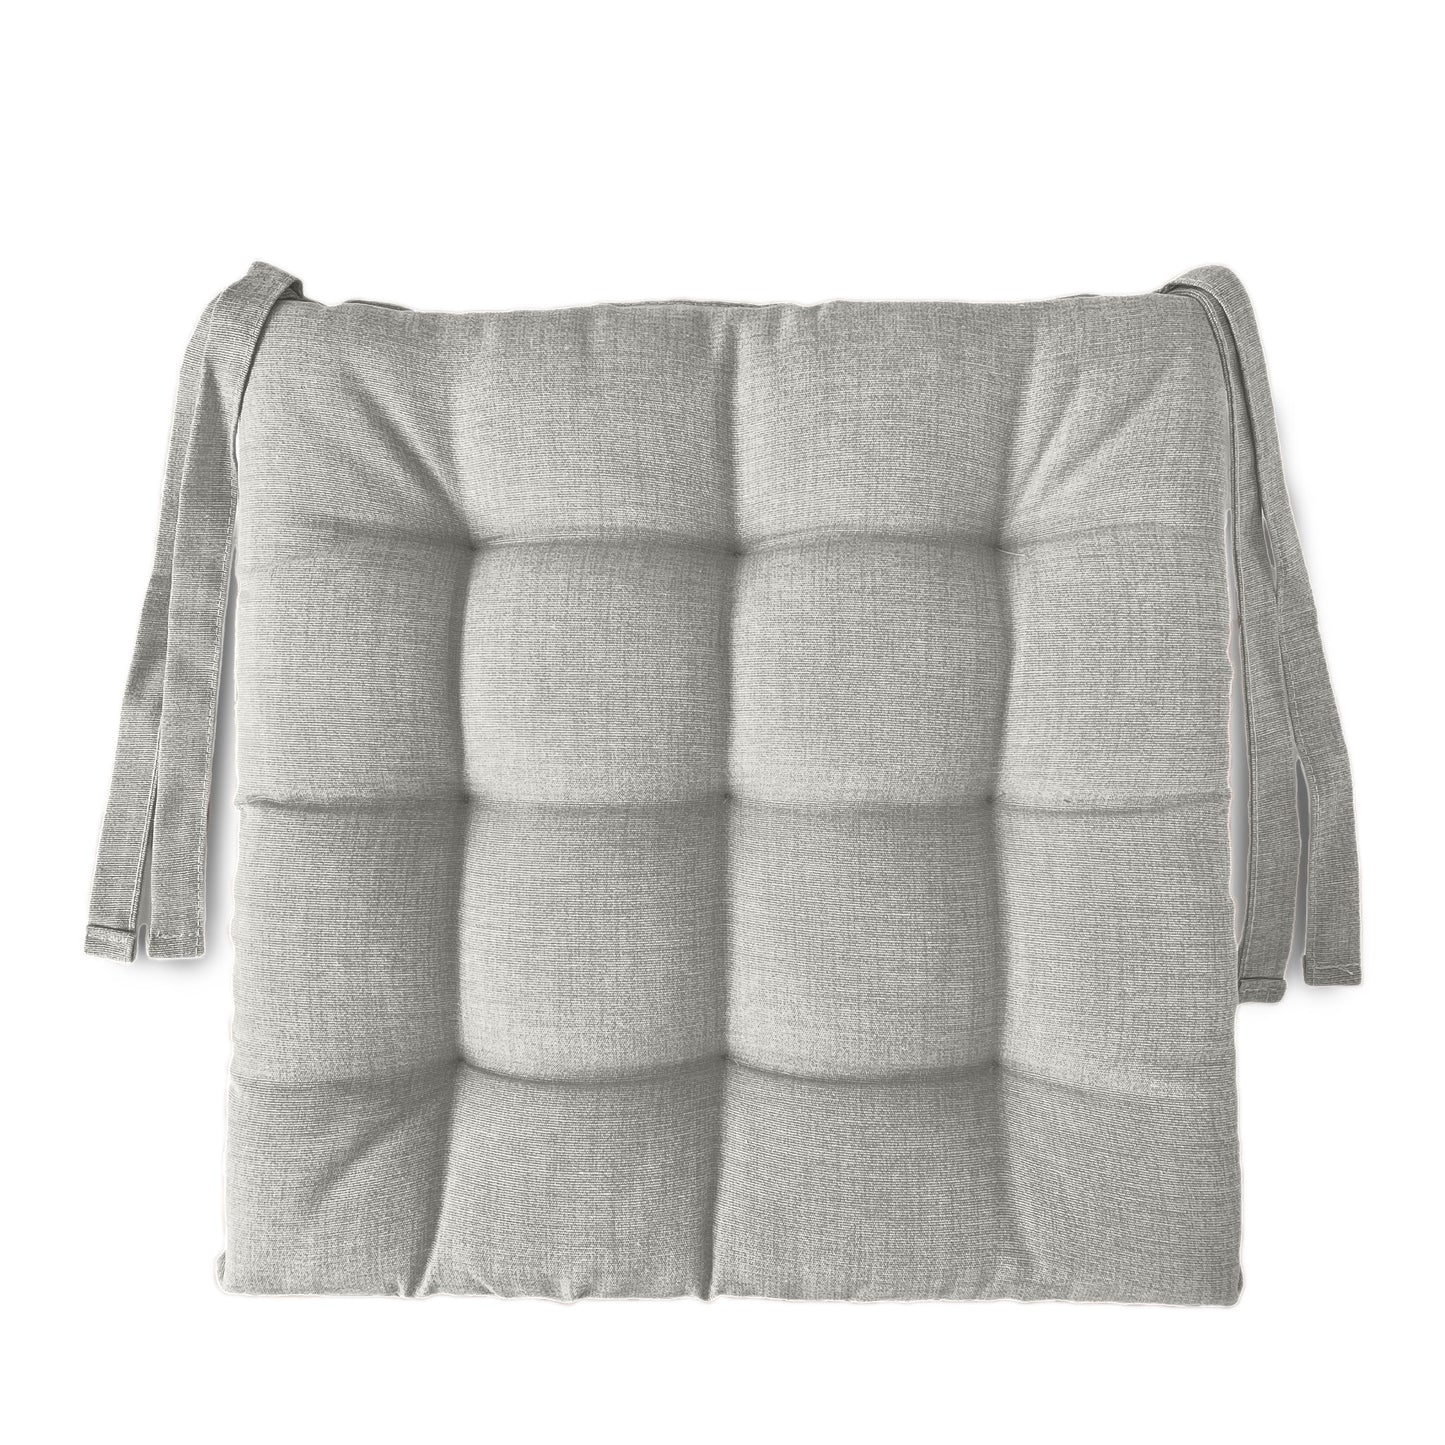 6 cuscini copri sedie da cucina grigio chiaro - Linea Rome